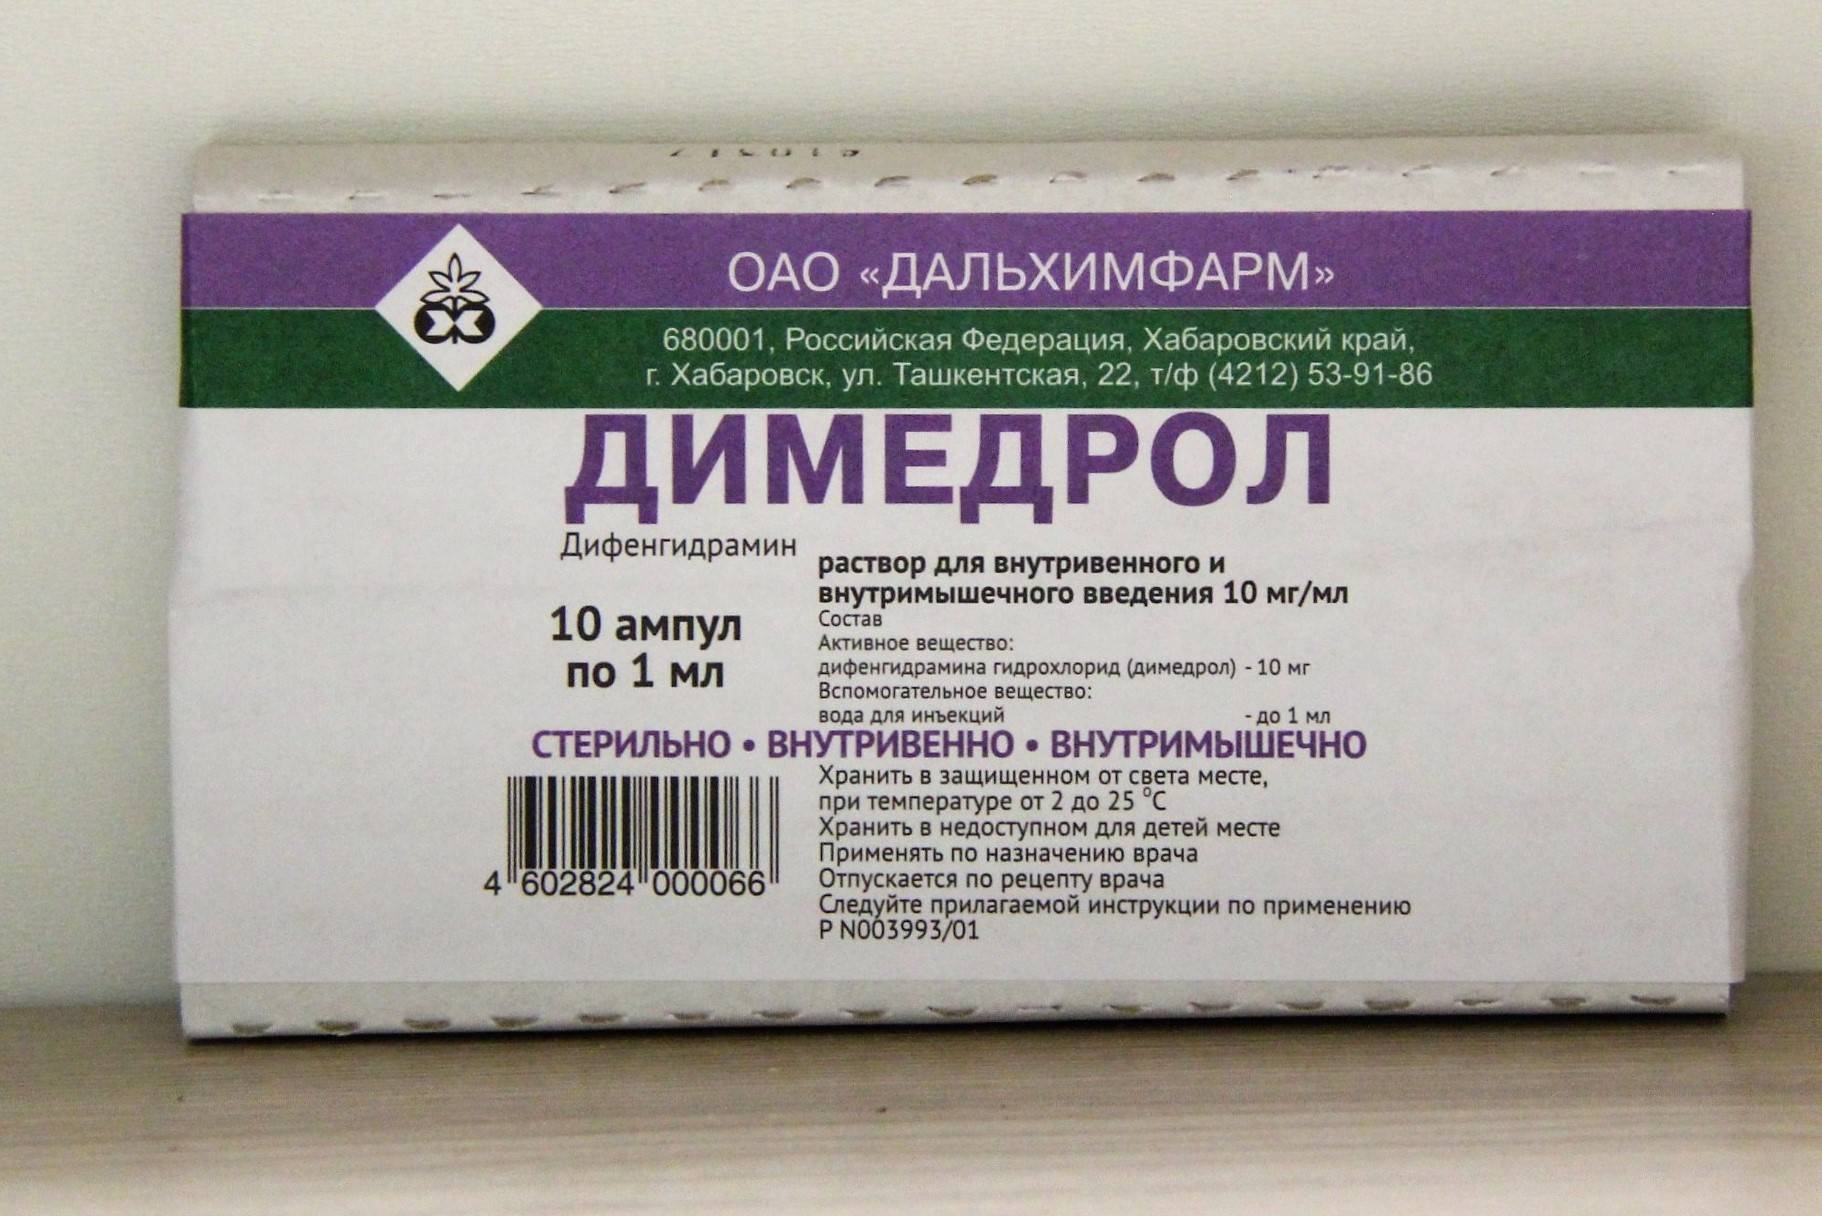 Дифенгидрамин инструкция по применению цена. Димедрол ампулы дозировка. Димедрол Рецептурный препарат. Димедрол 1 для инъекций. Димедрол 5 ампул.